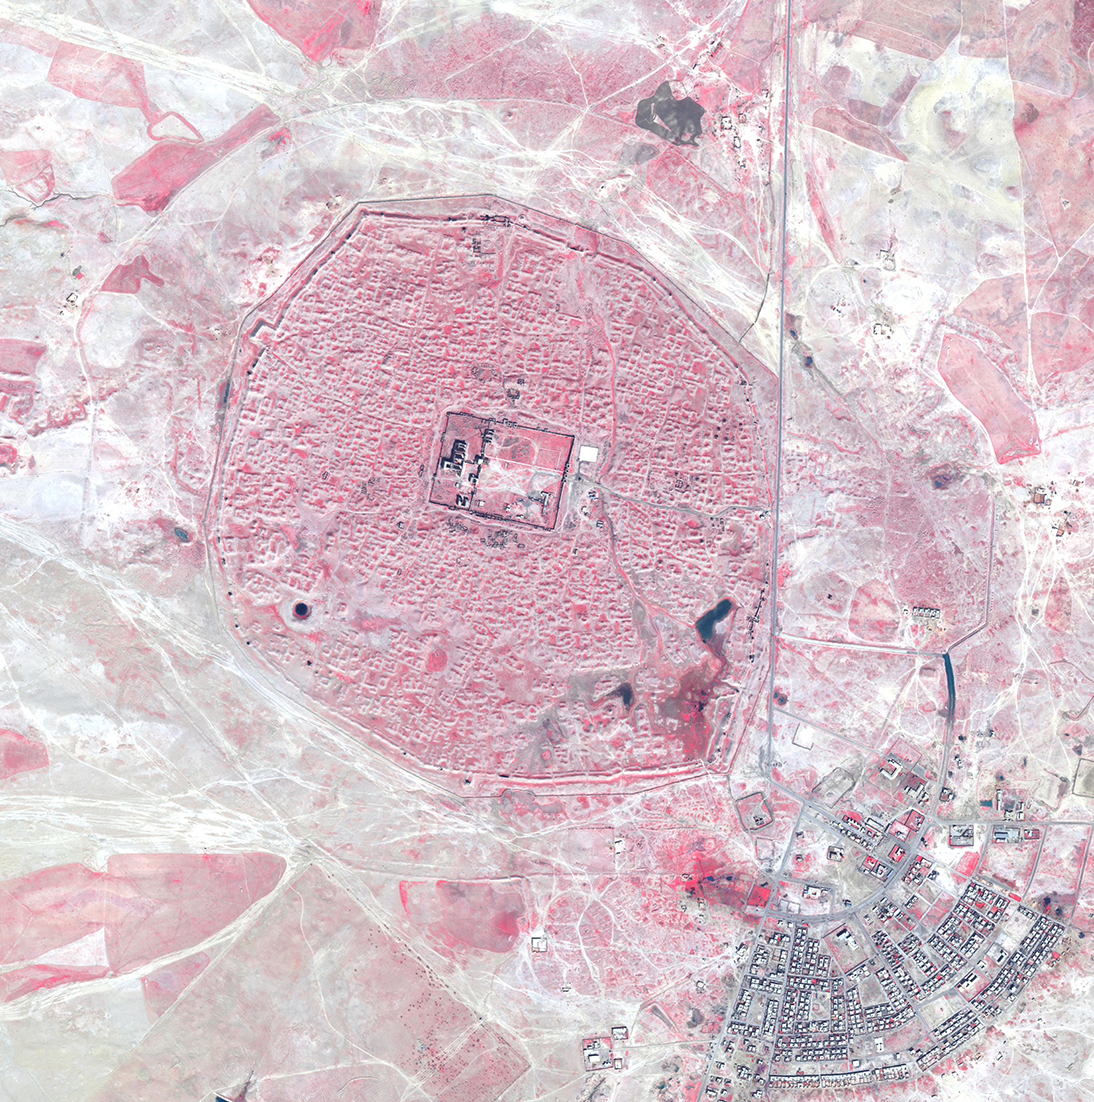 Hatra (Iraq) in un’immagine pan-sharpened QuickBird-2 a falso colore infrarosso del 2004